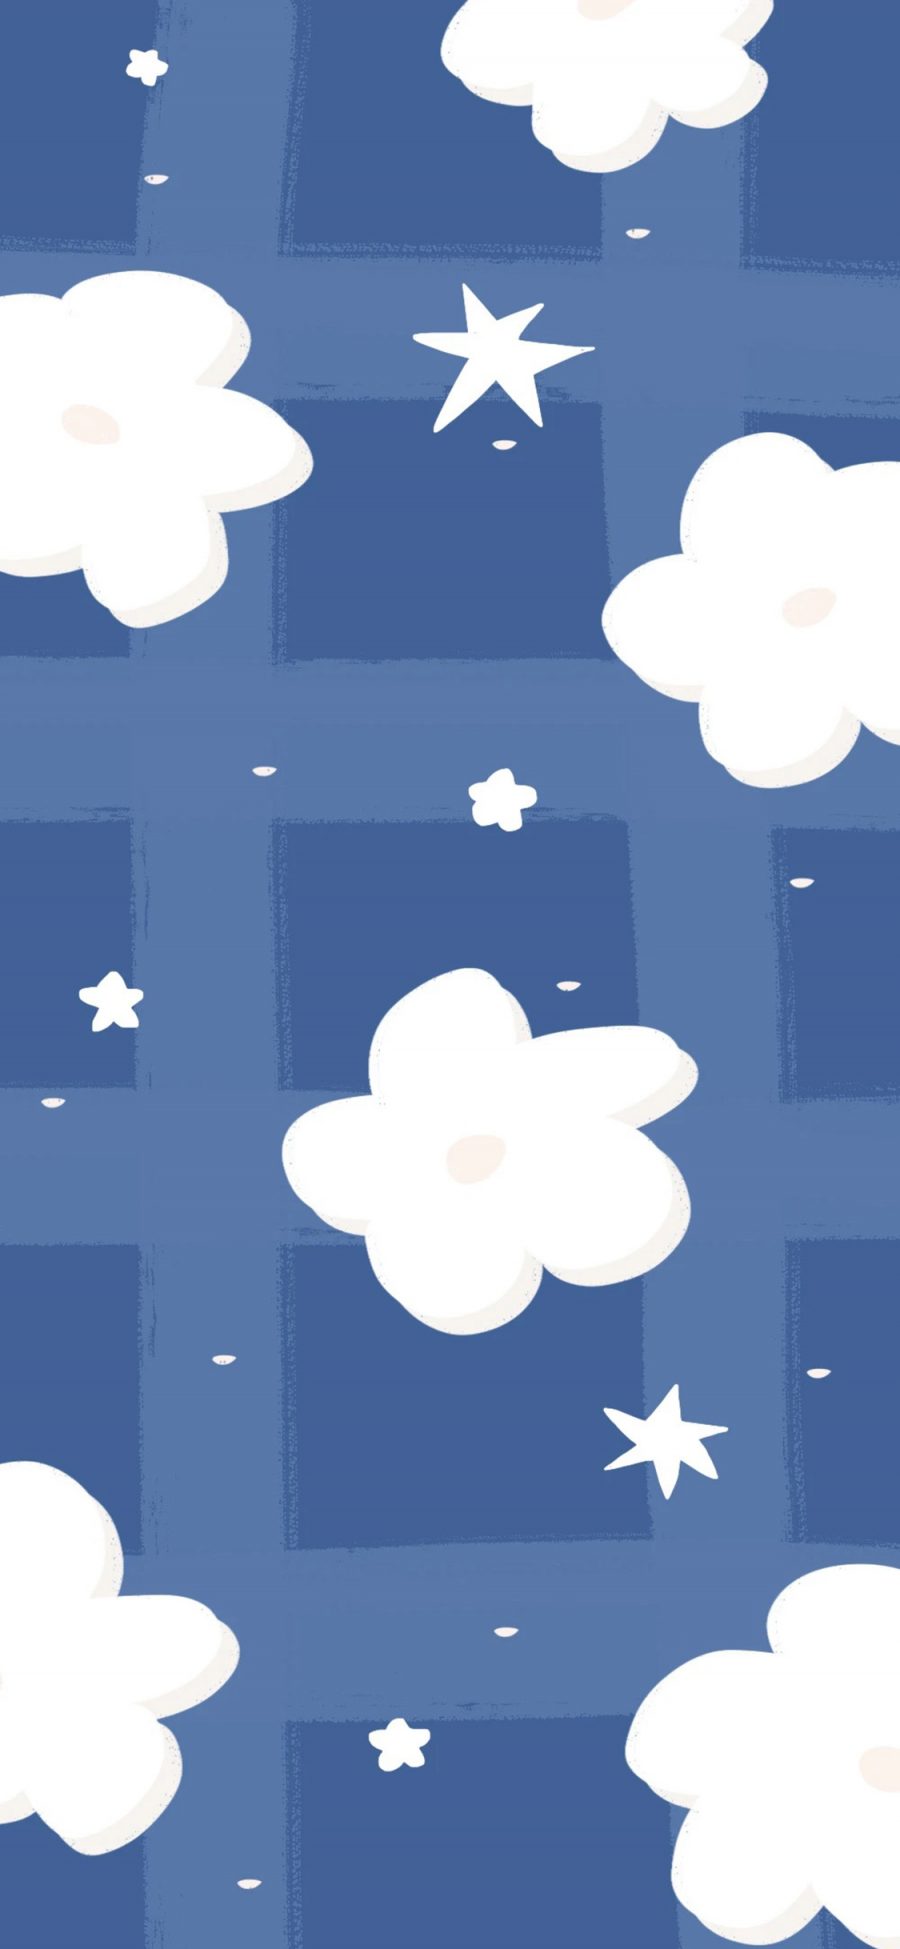 [2436×1125]白云 星星 蓝色 方格 苹果手机动漫壁纸图片